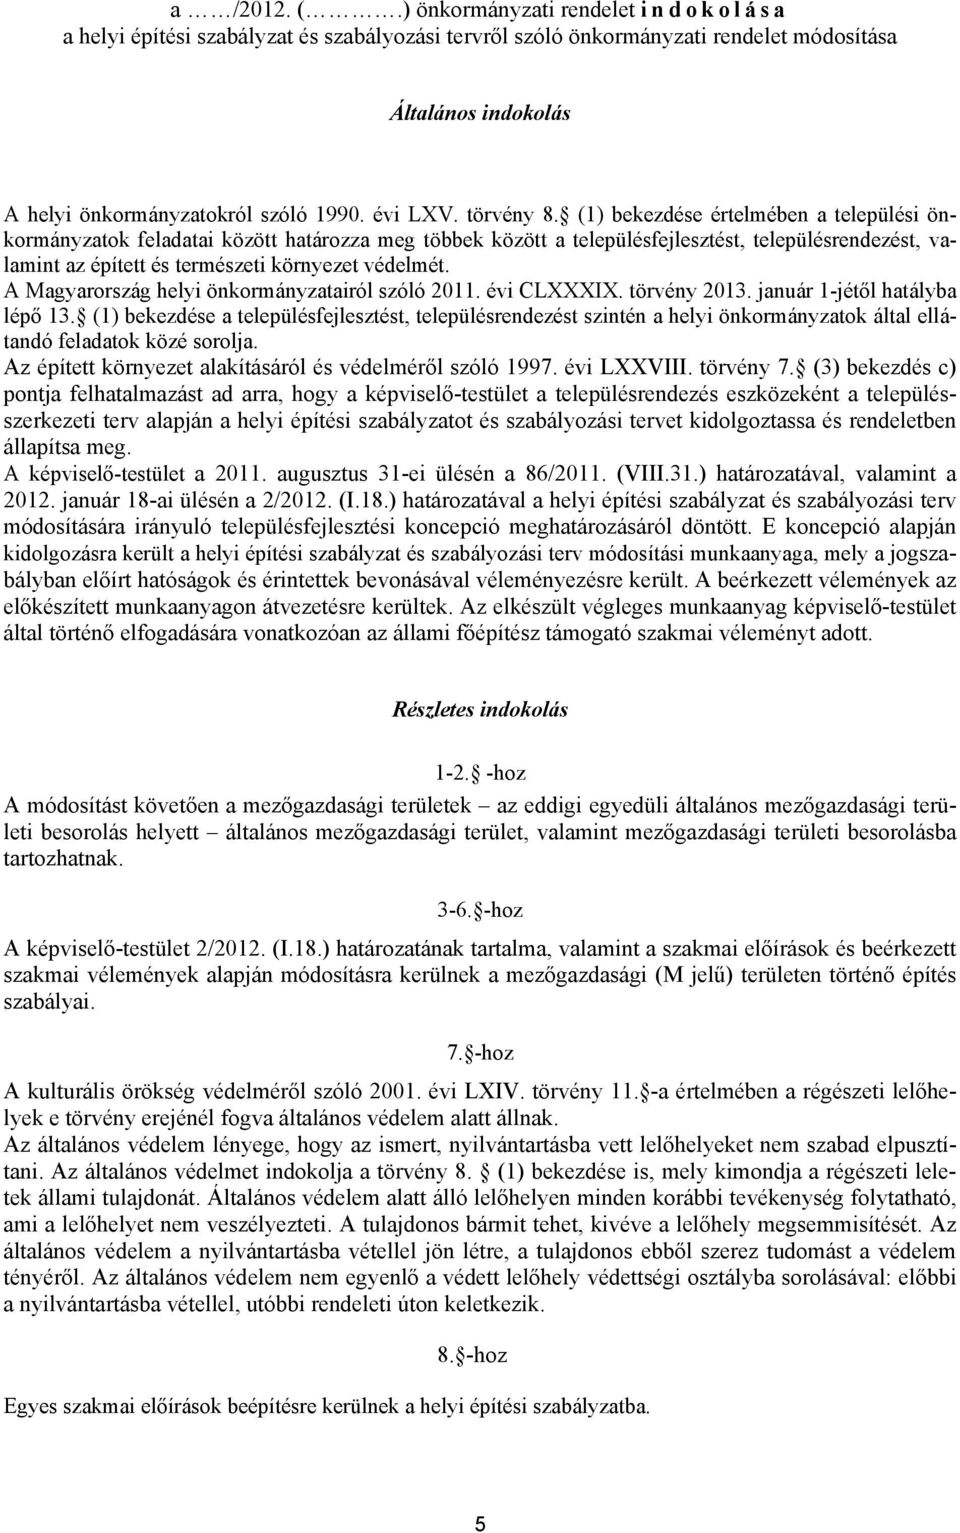 A Mgyrország helyi önkormányztiról szóló 2011. évi CXXXIX. törvény 2013. jnuár 1-jétől htály lépő 13.